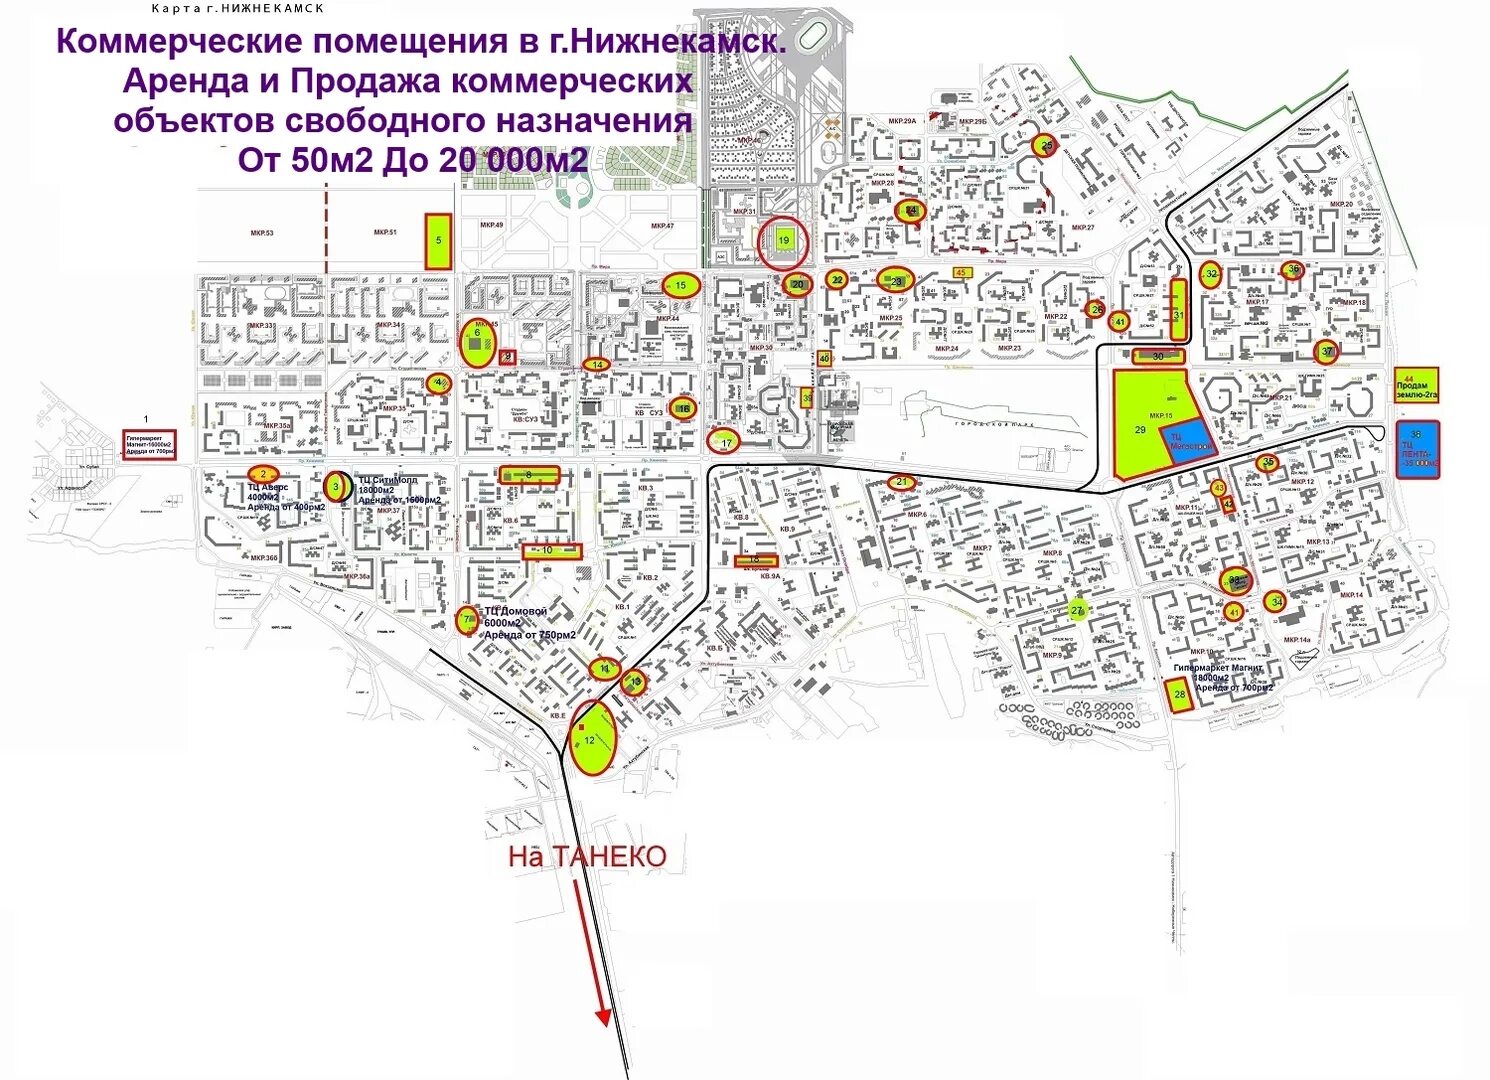 Где город нижнекамск. Схема города Нижнекамск. Карта города Нижнекамск. Карта Нижнекамска с улицами. Карта города Нижнекамск с микрорайонами.